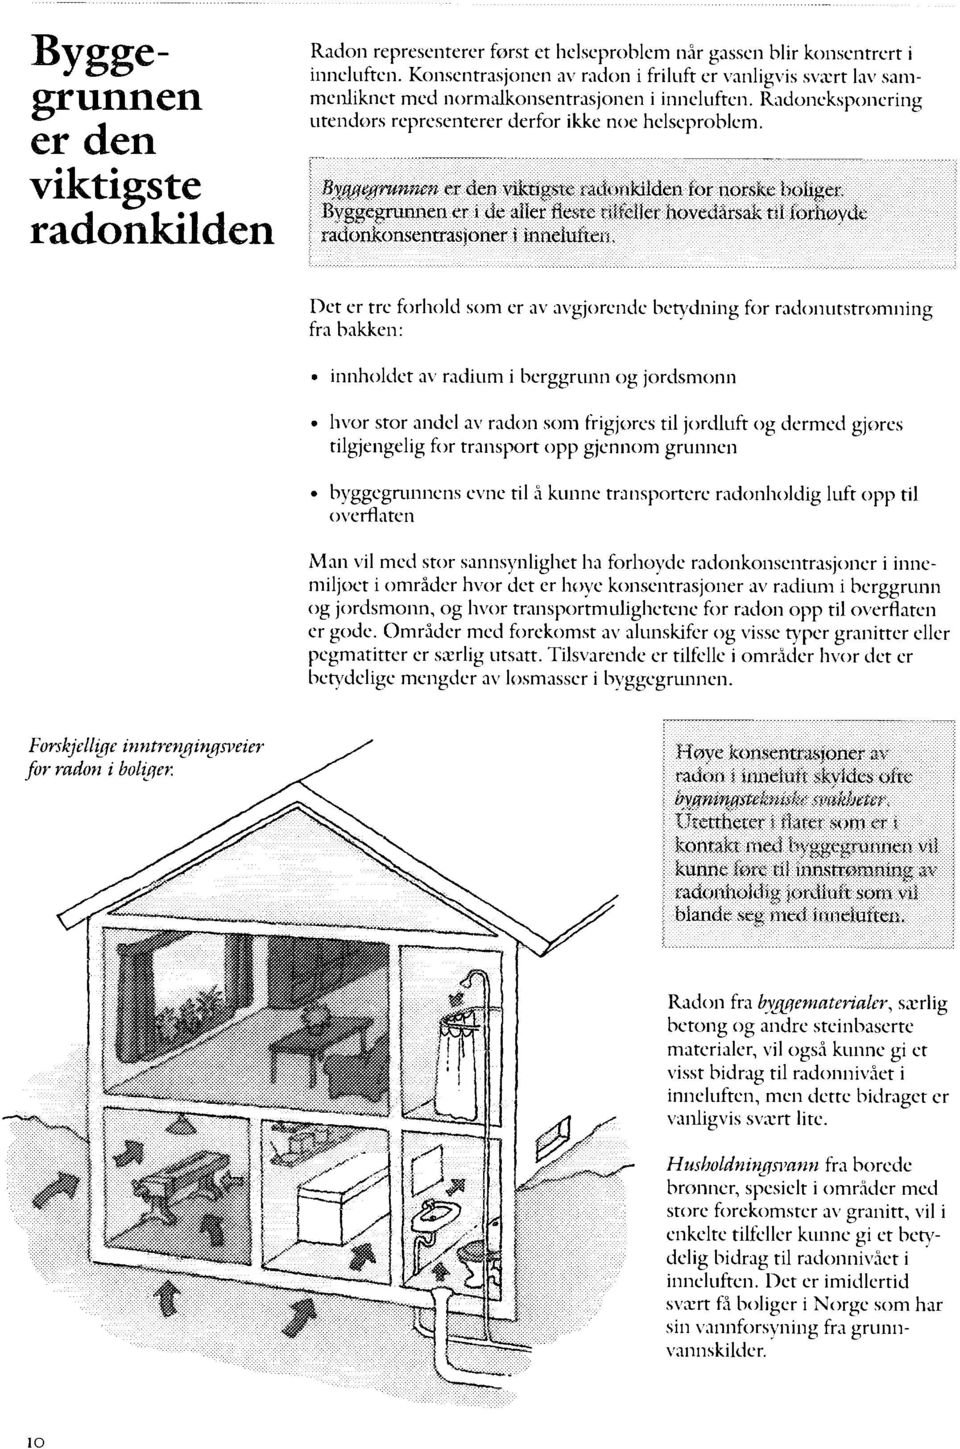 er den viktigste radonkilden for norske boliger. Byggegrunnen er i åc alier flesre riitetler hovedårsak t;i ioriiøydv radonkonsentrasjoner i inneiuften.